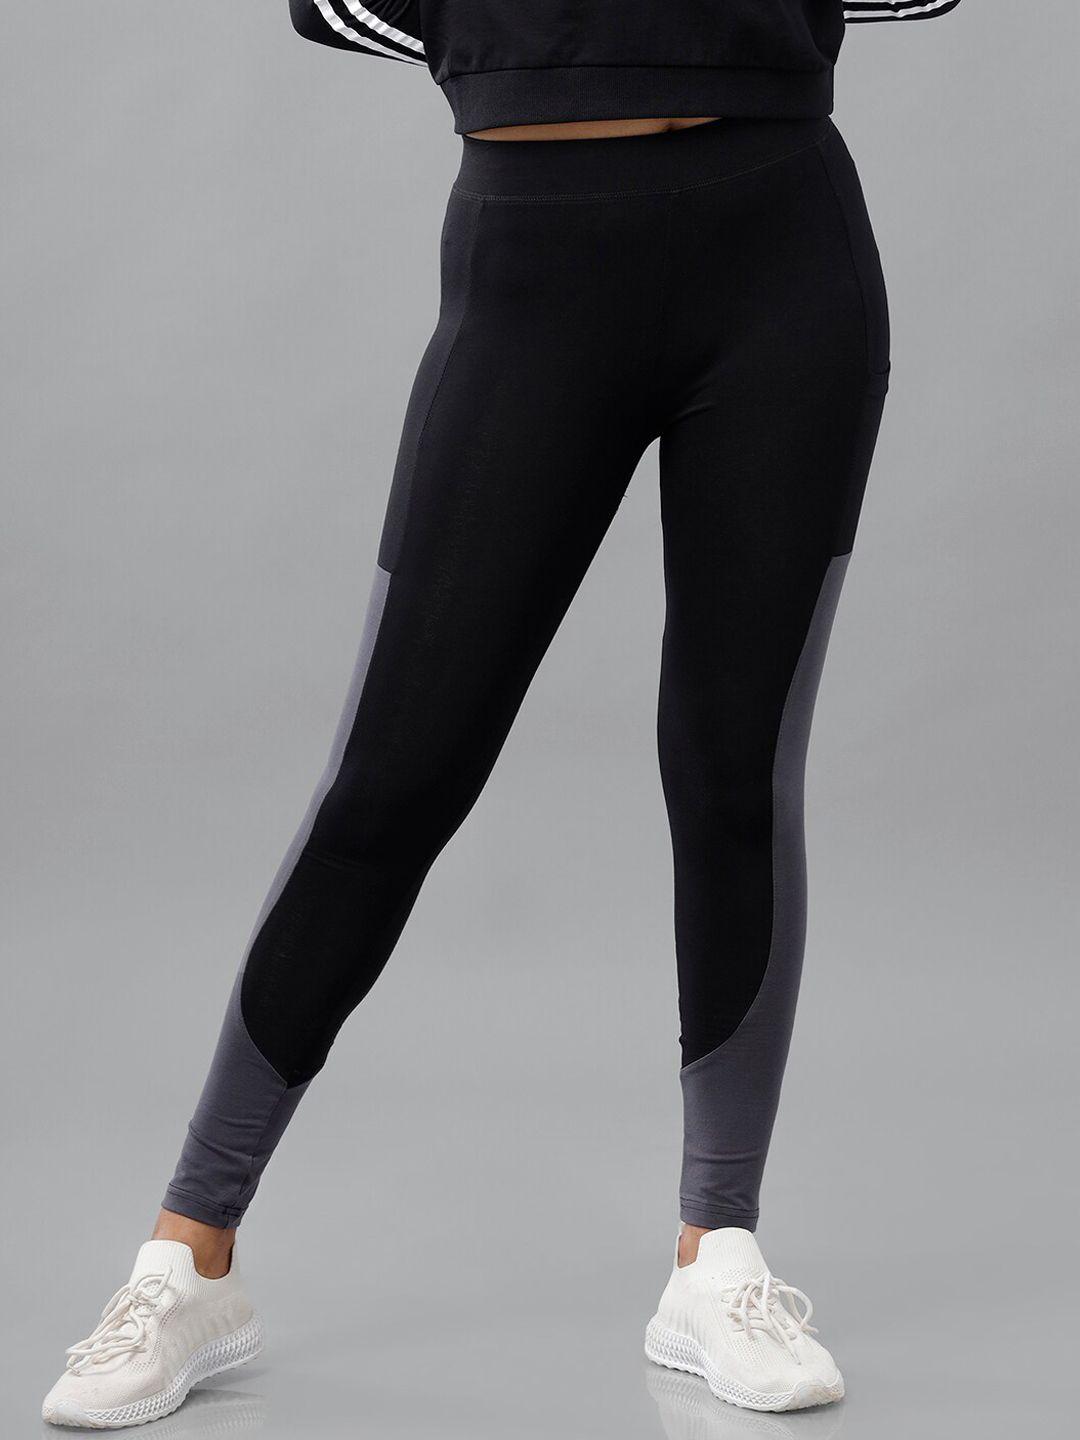 de moza women black & grey colourblocked activewear tights